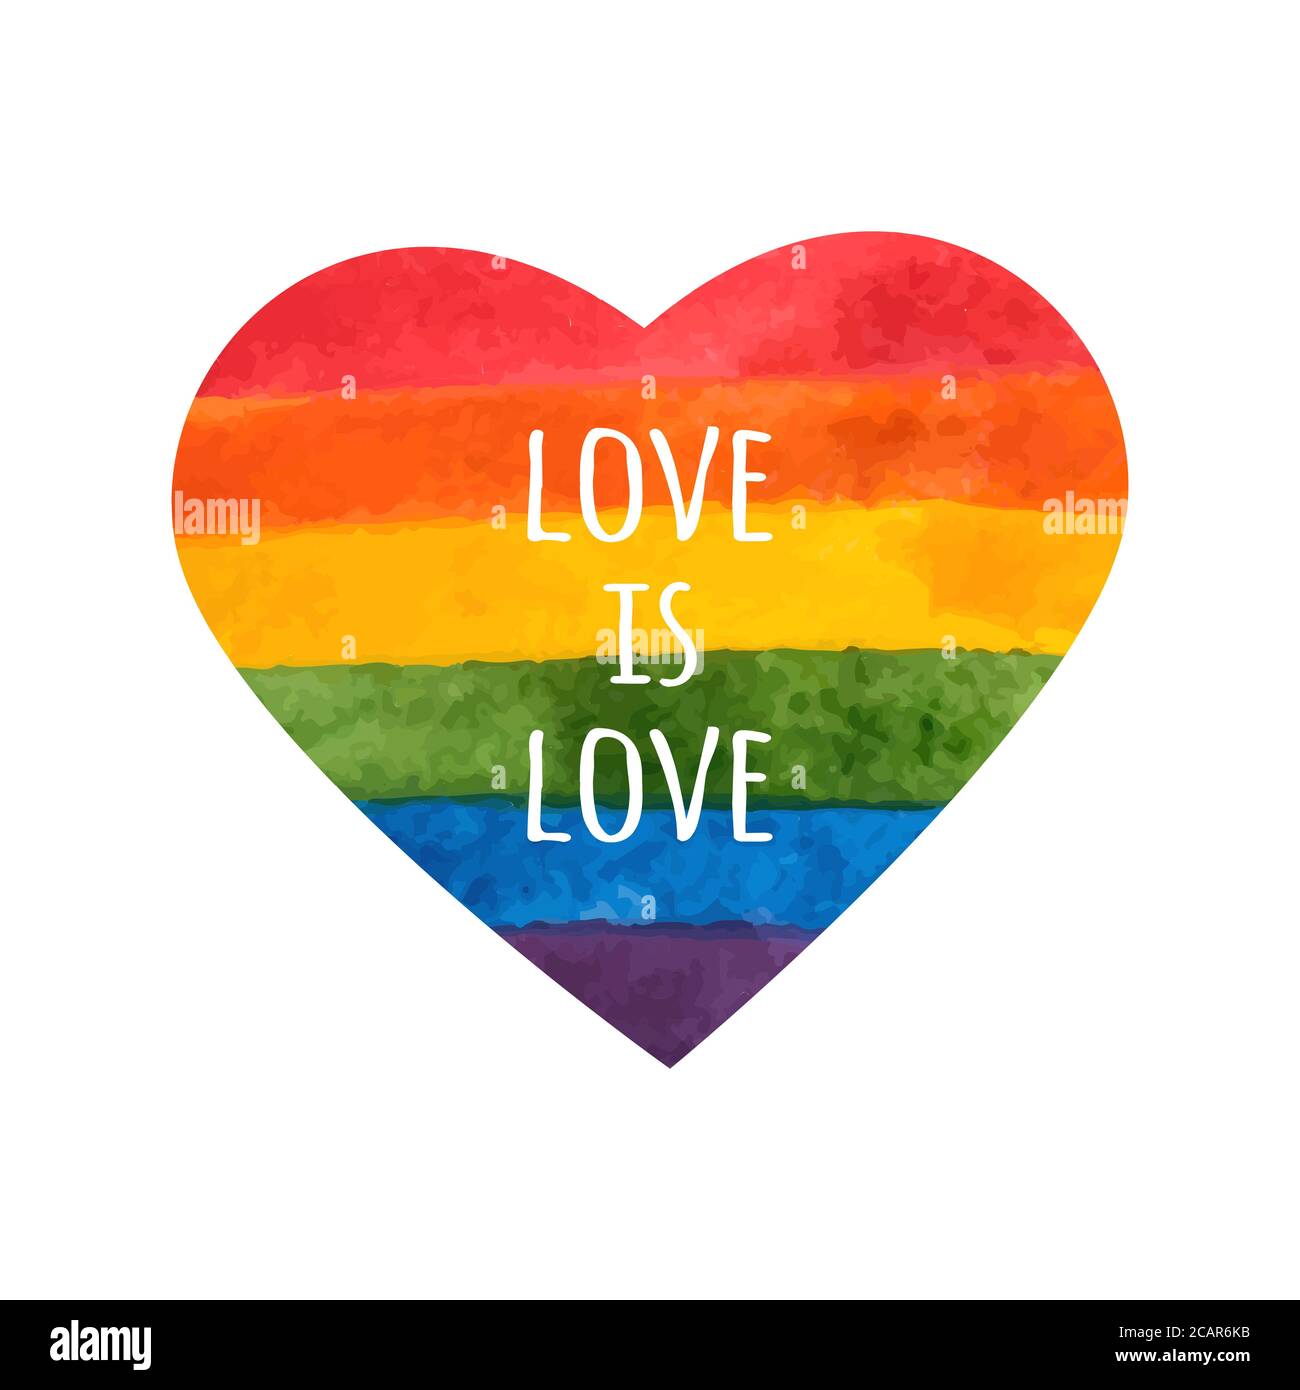 Arcobaleno cuore. L'amore è amore - slogan dell'orgoglio. Cuore LGBT. Arcobaleno dipinto a mano. Cartellino del giorno di tolleranza. Illustrazione vettoriale. Illustrazione Vettoriale